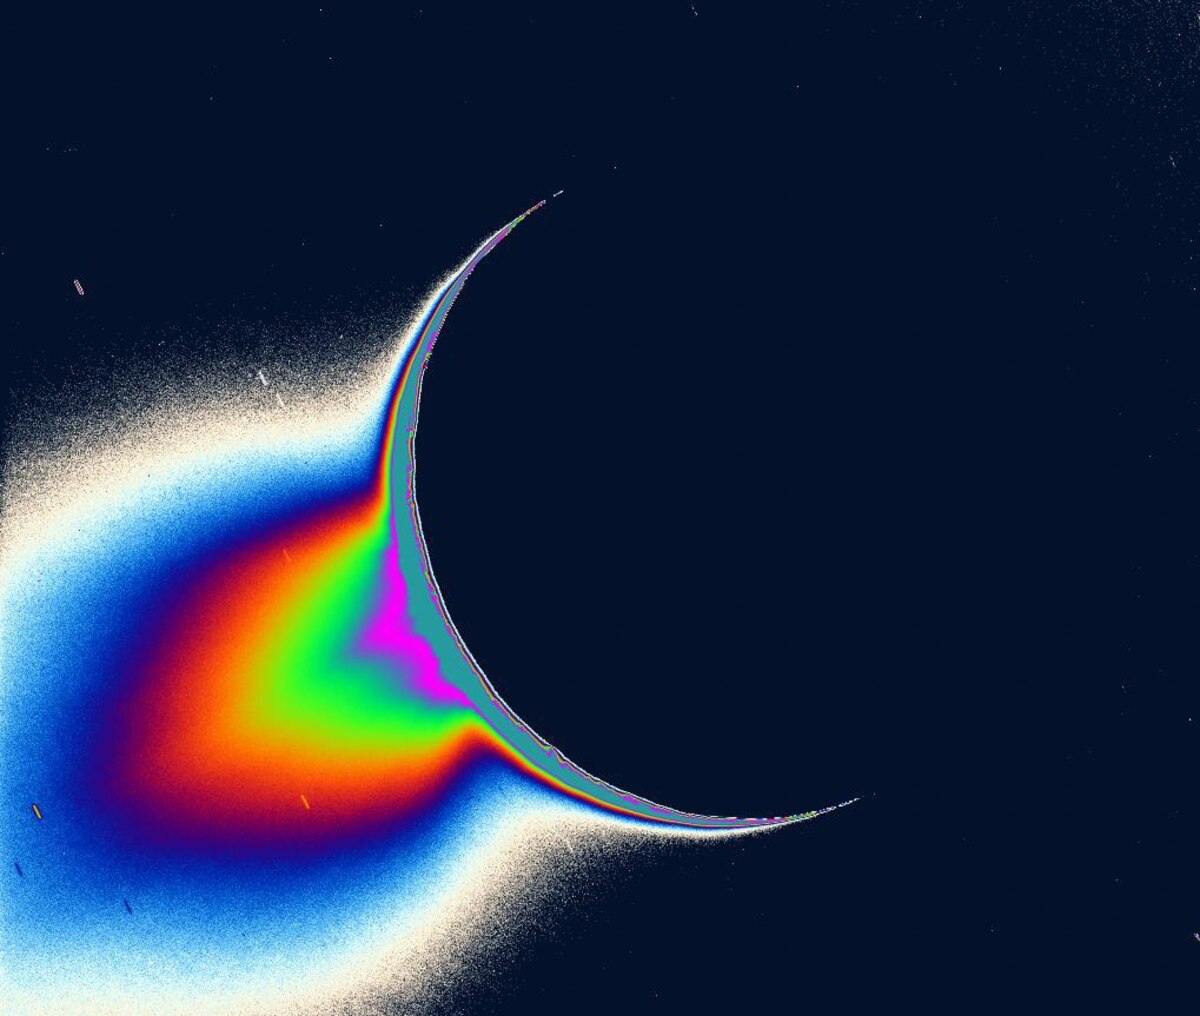 土星探査機カッシーニが撮影した、太陽を背景にしたエンケラドスの画像。南極域から噴水のように物質が噴き出しているのがわかる。（IMAGE BY NASA/JPL/SPACE SCIENCE INSTITUTE）